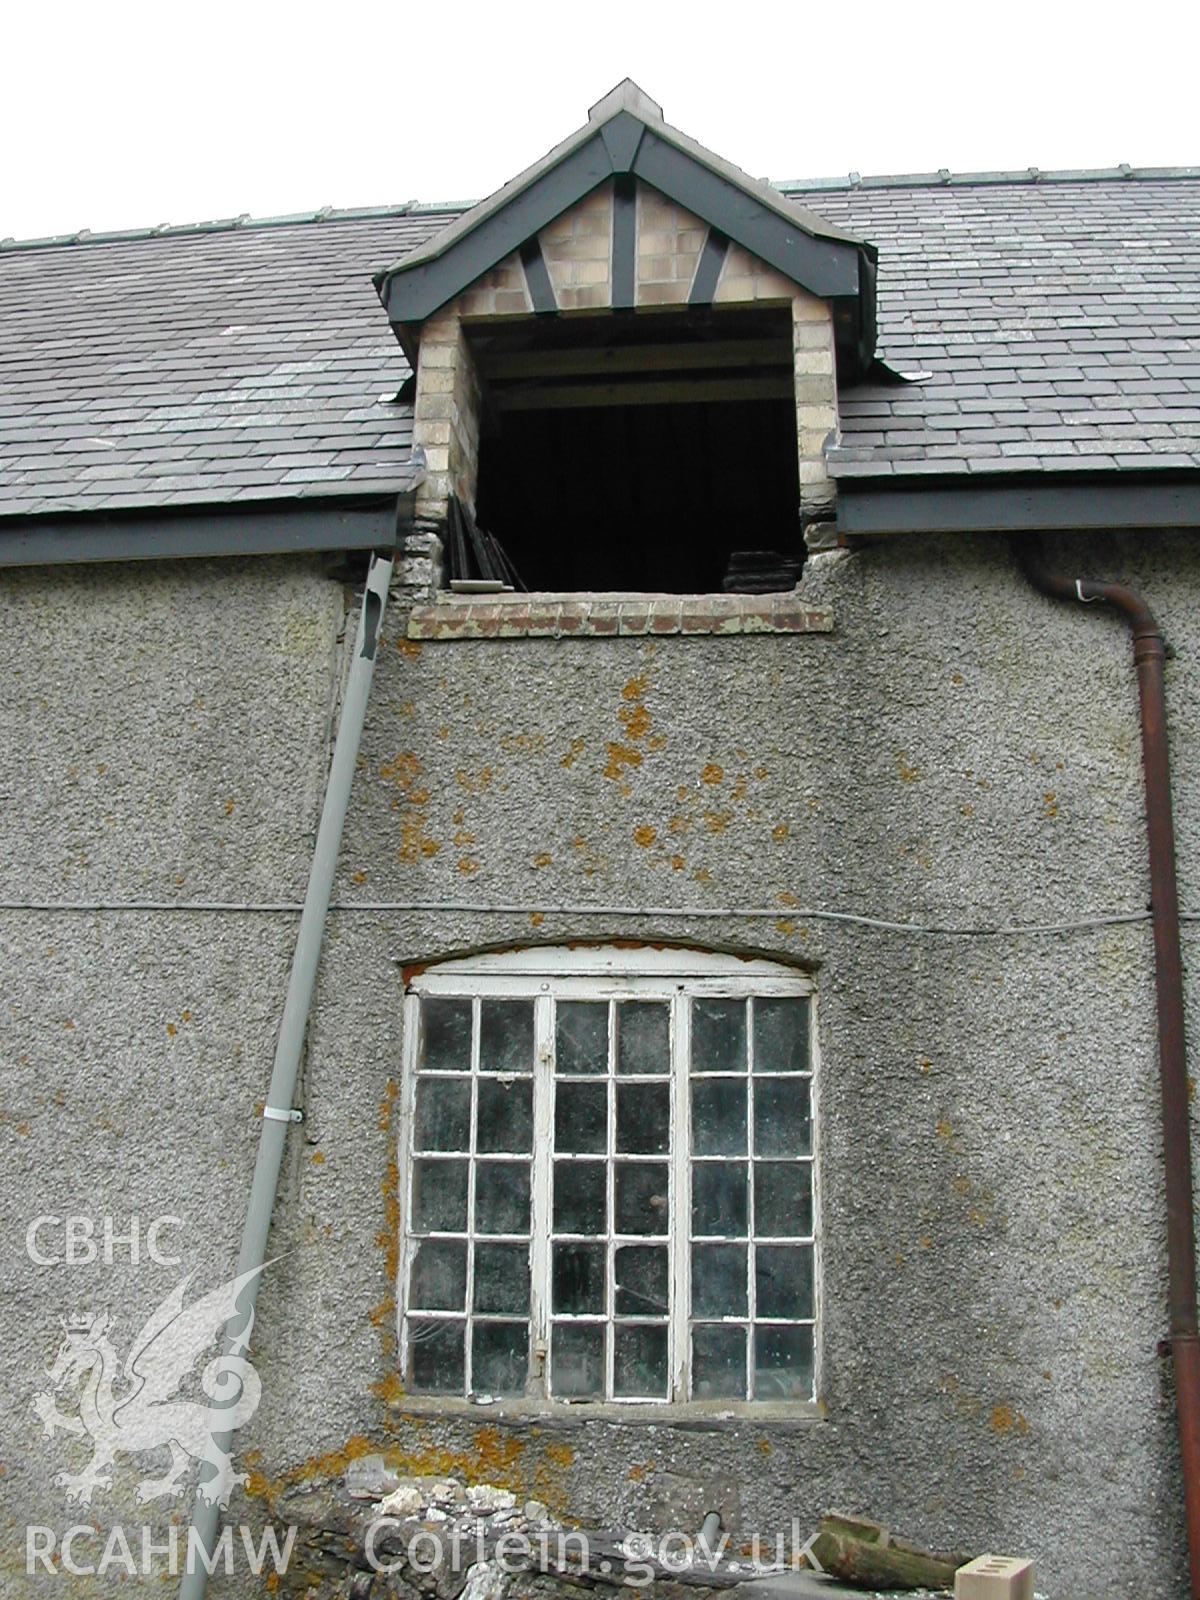 View of exterior showing window and door